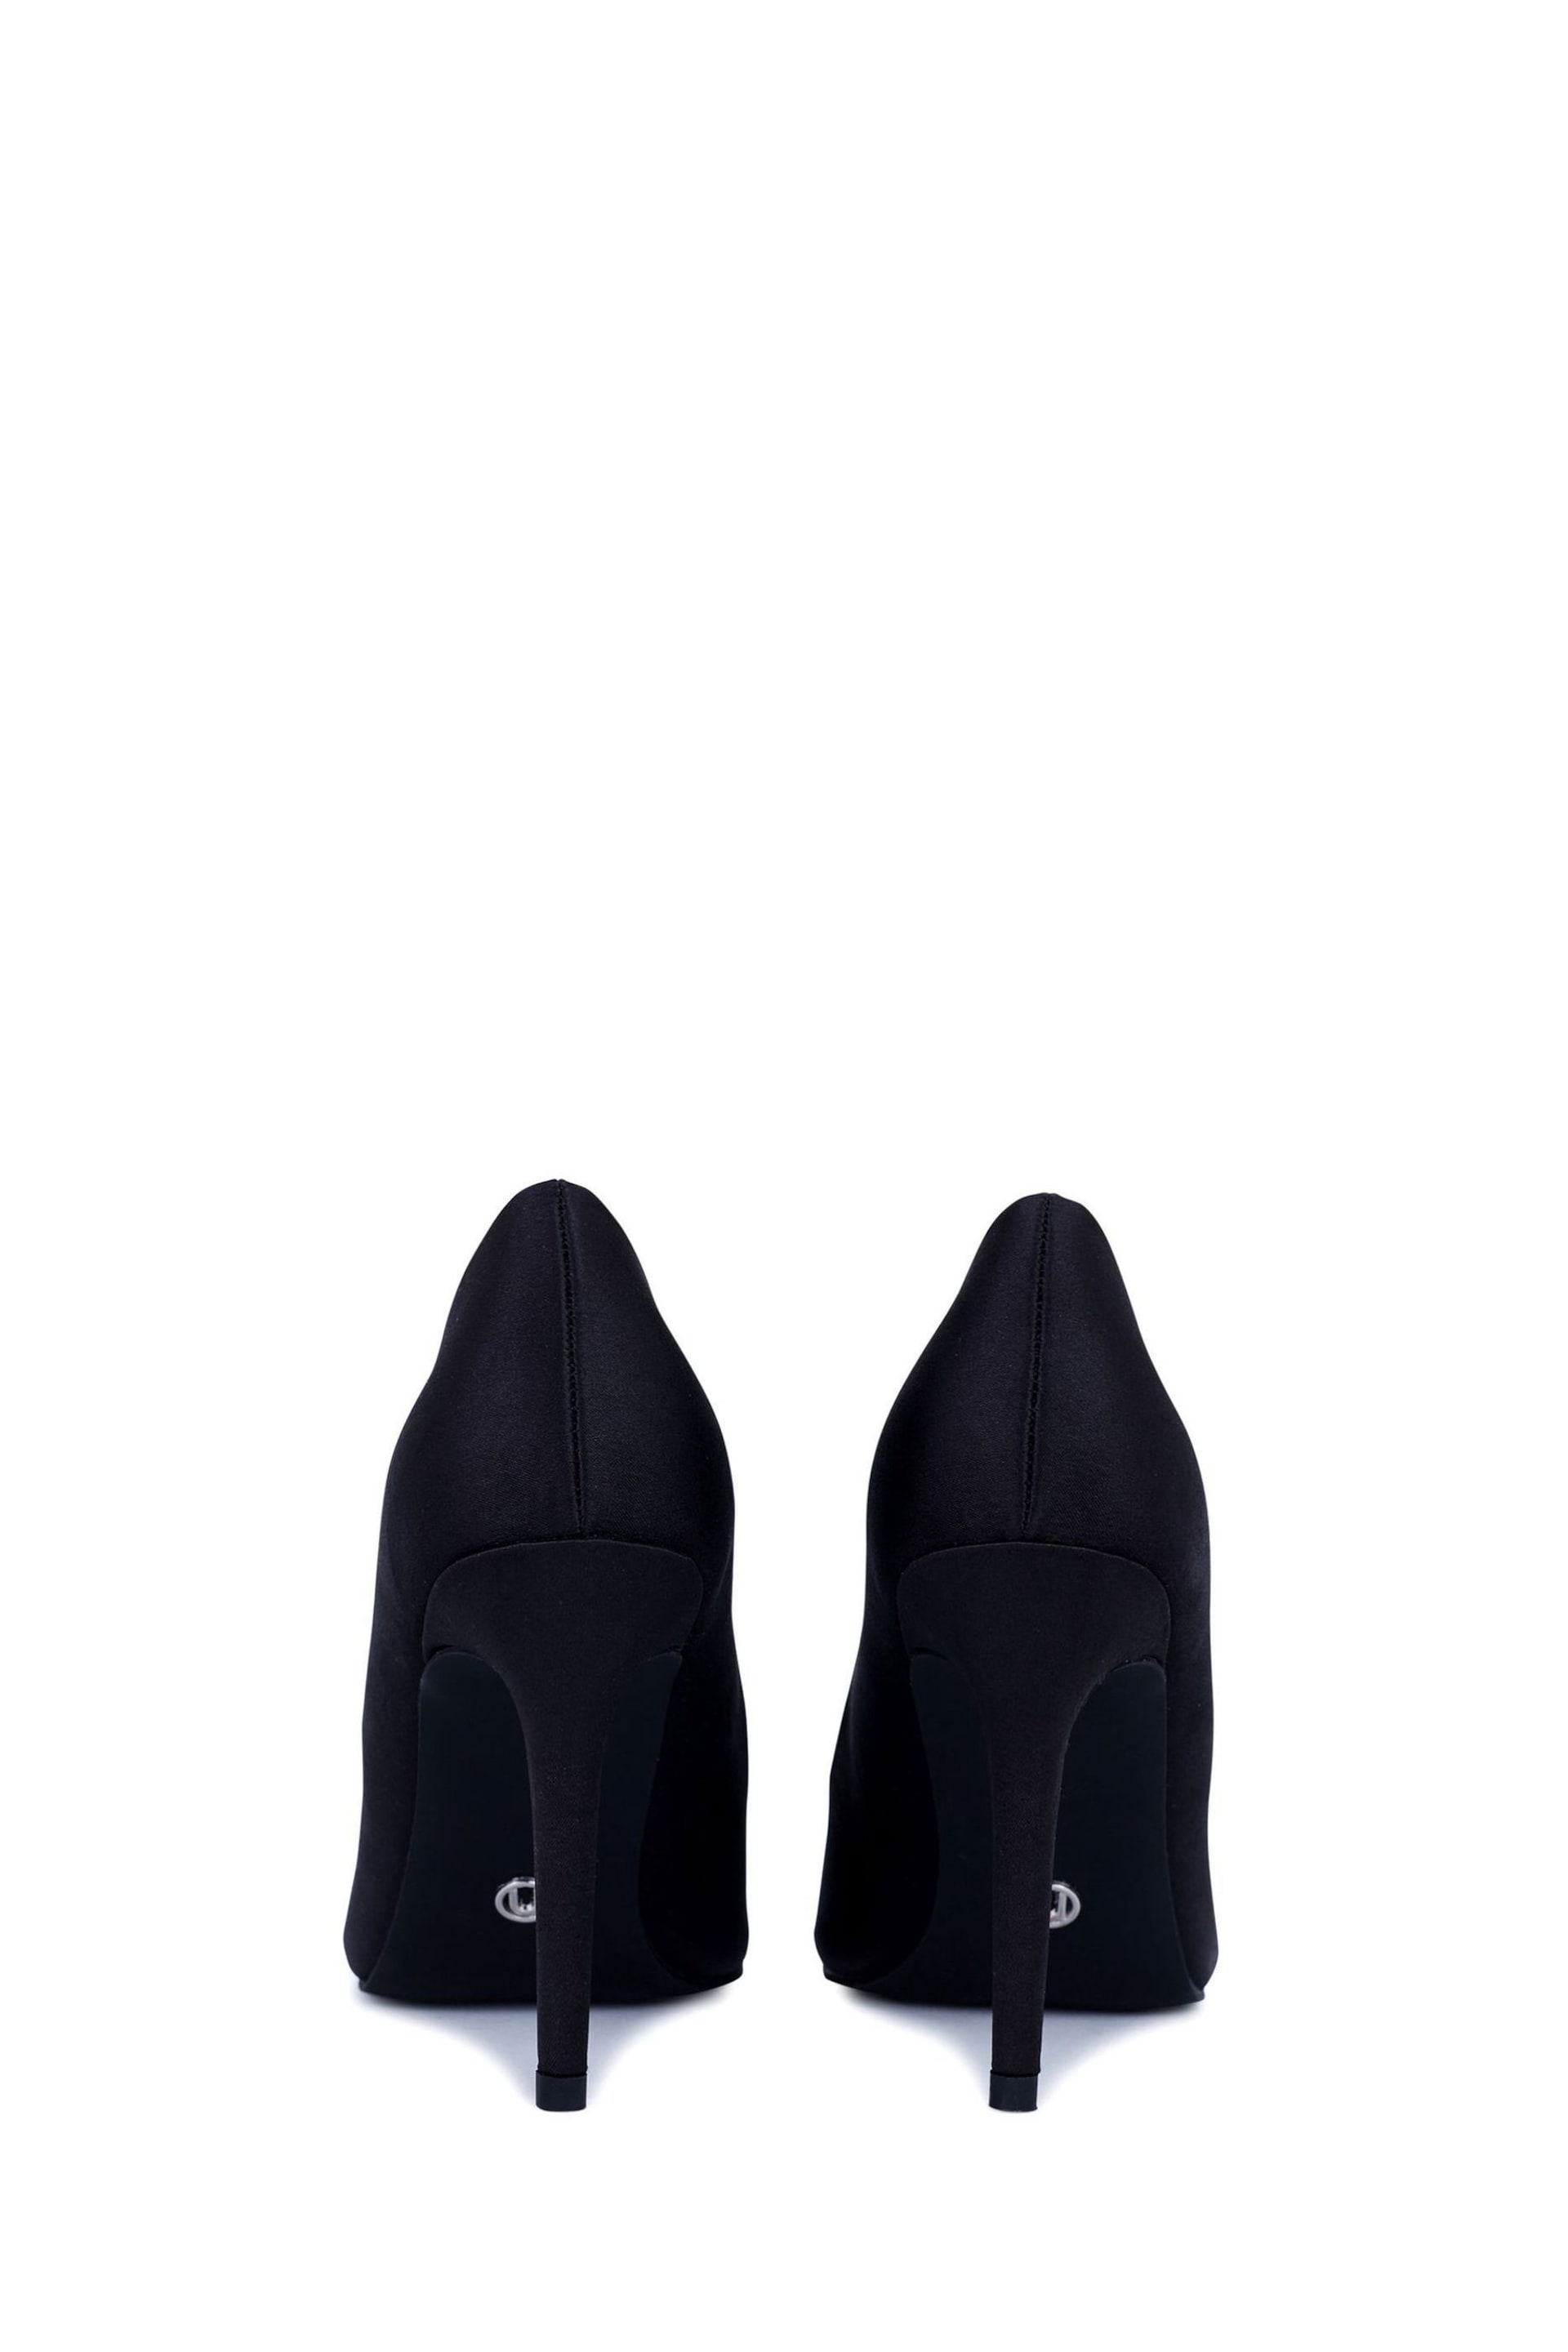 Novo Black Crissy Court Shoes - Image 5 of 5